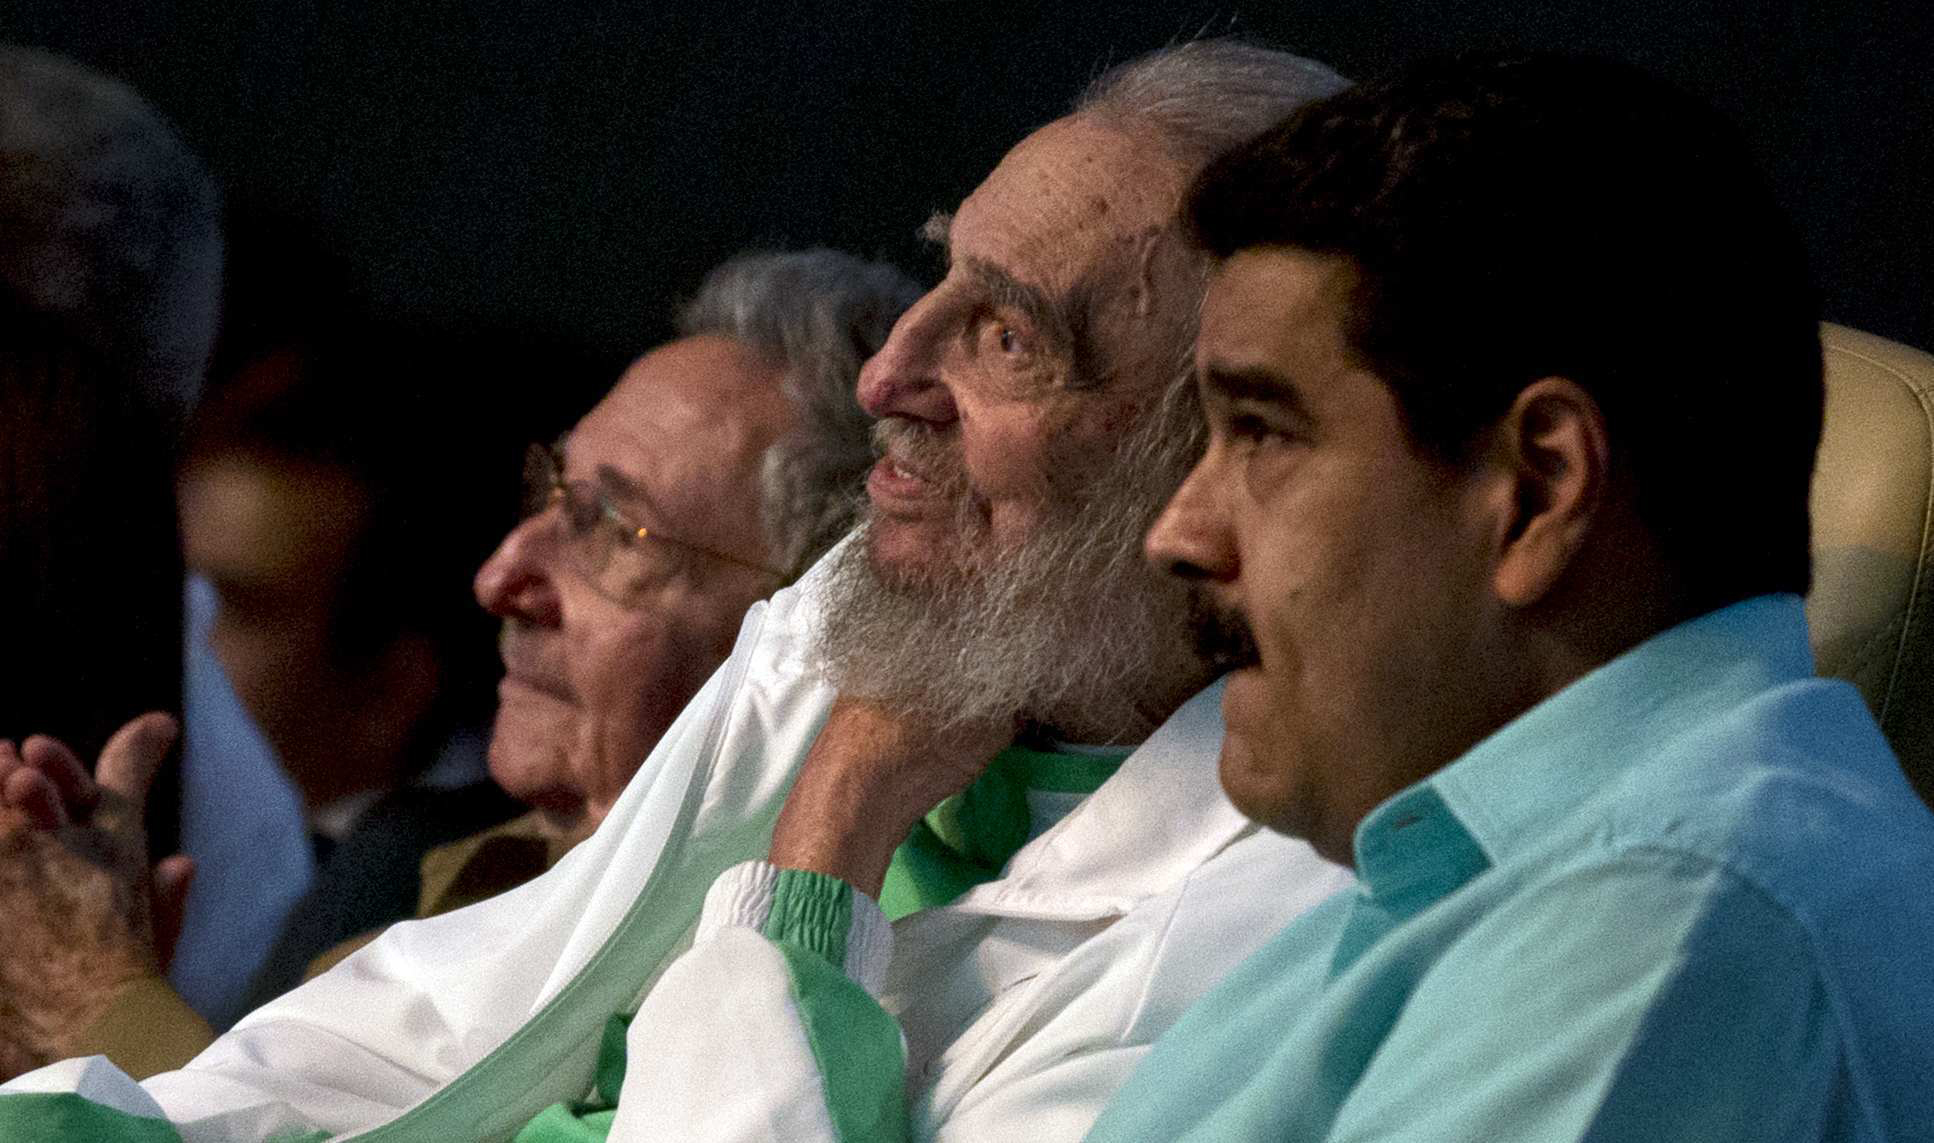  Acusan a Maduro de festejar a Fidel Castro con dinero público